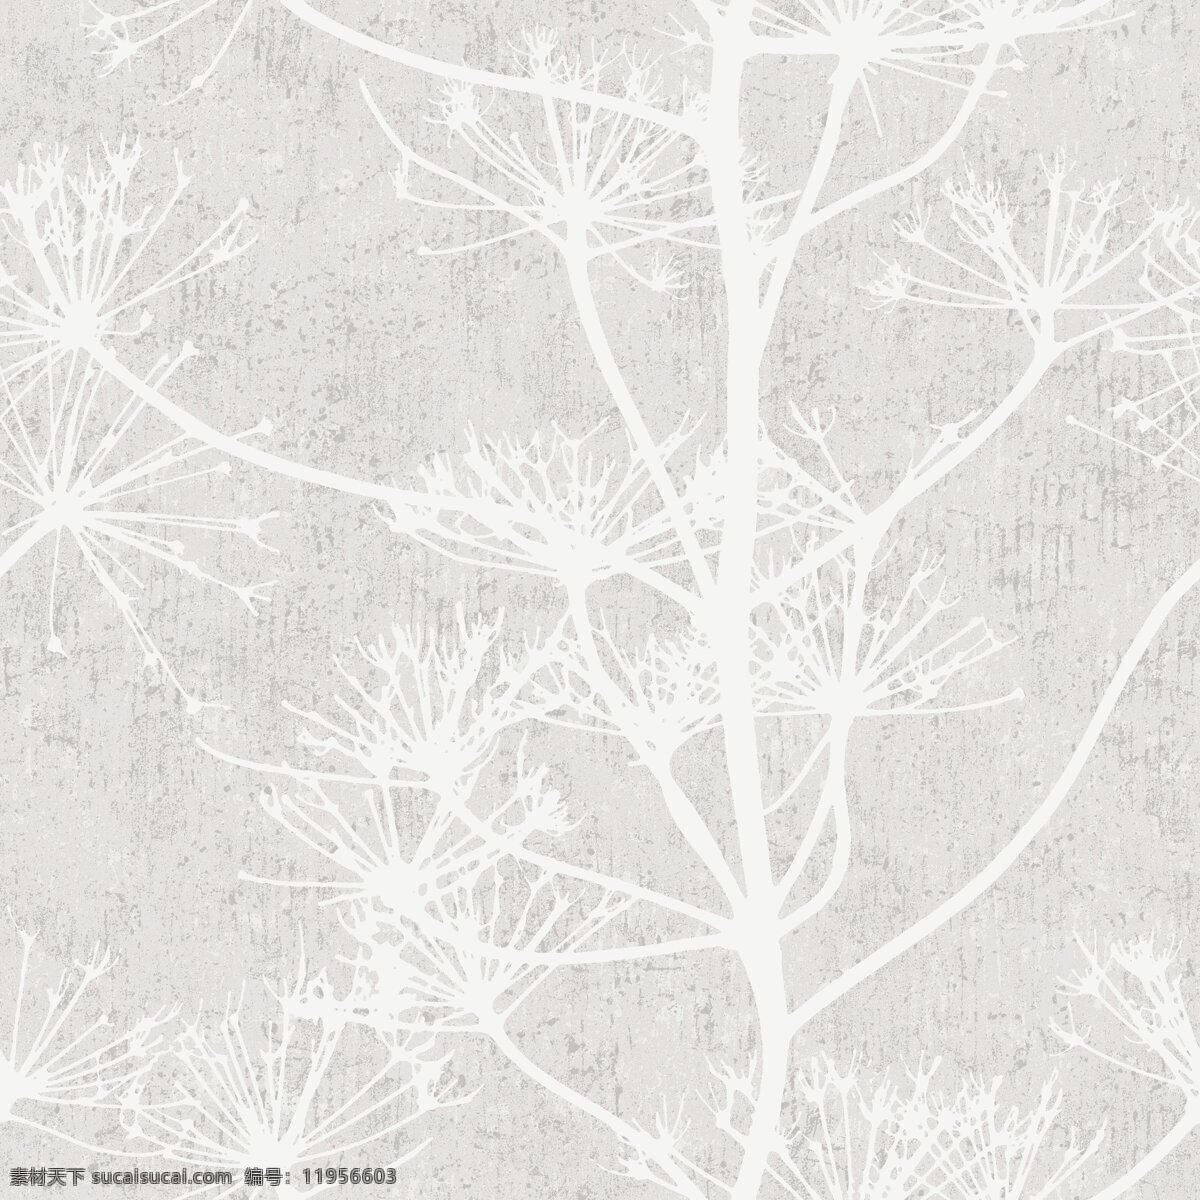 冬季 素雅 灰白色 树枝 壁纸 图案 壁纸图案 冬季元素 灰色底纹 植物壁纸